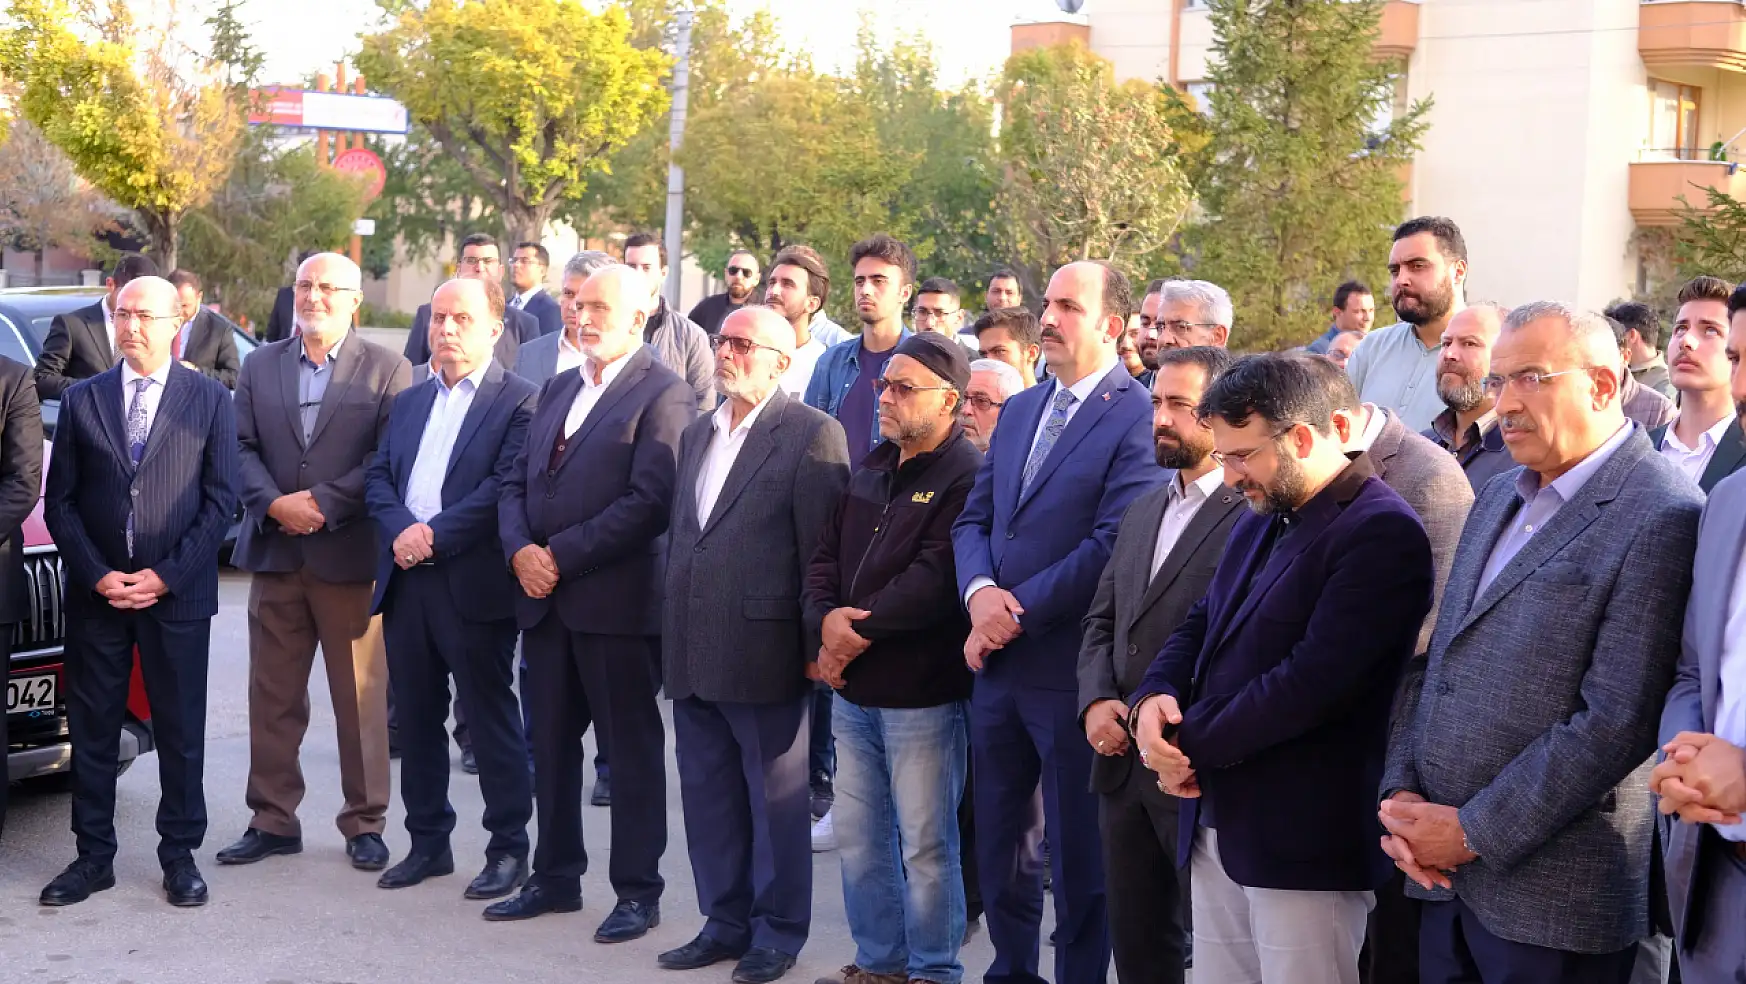 Konya Selçuklu'da İnsan ve Medeniyet Hareketi'nin yeni temsilciliği açıldı